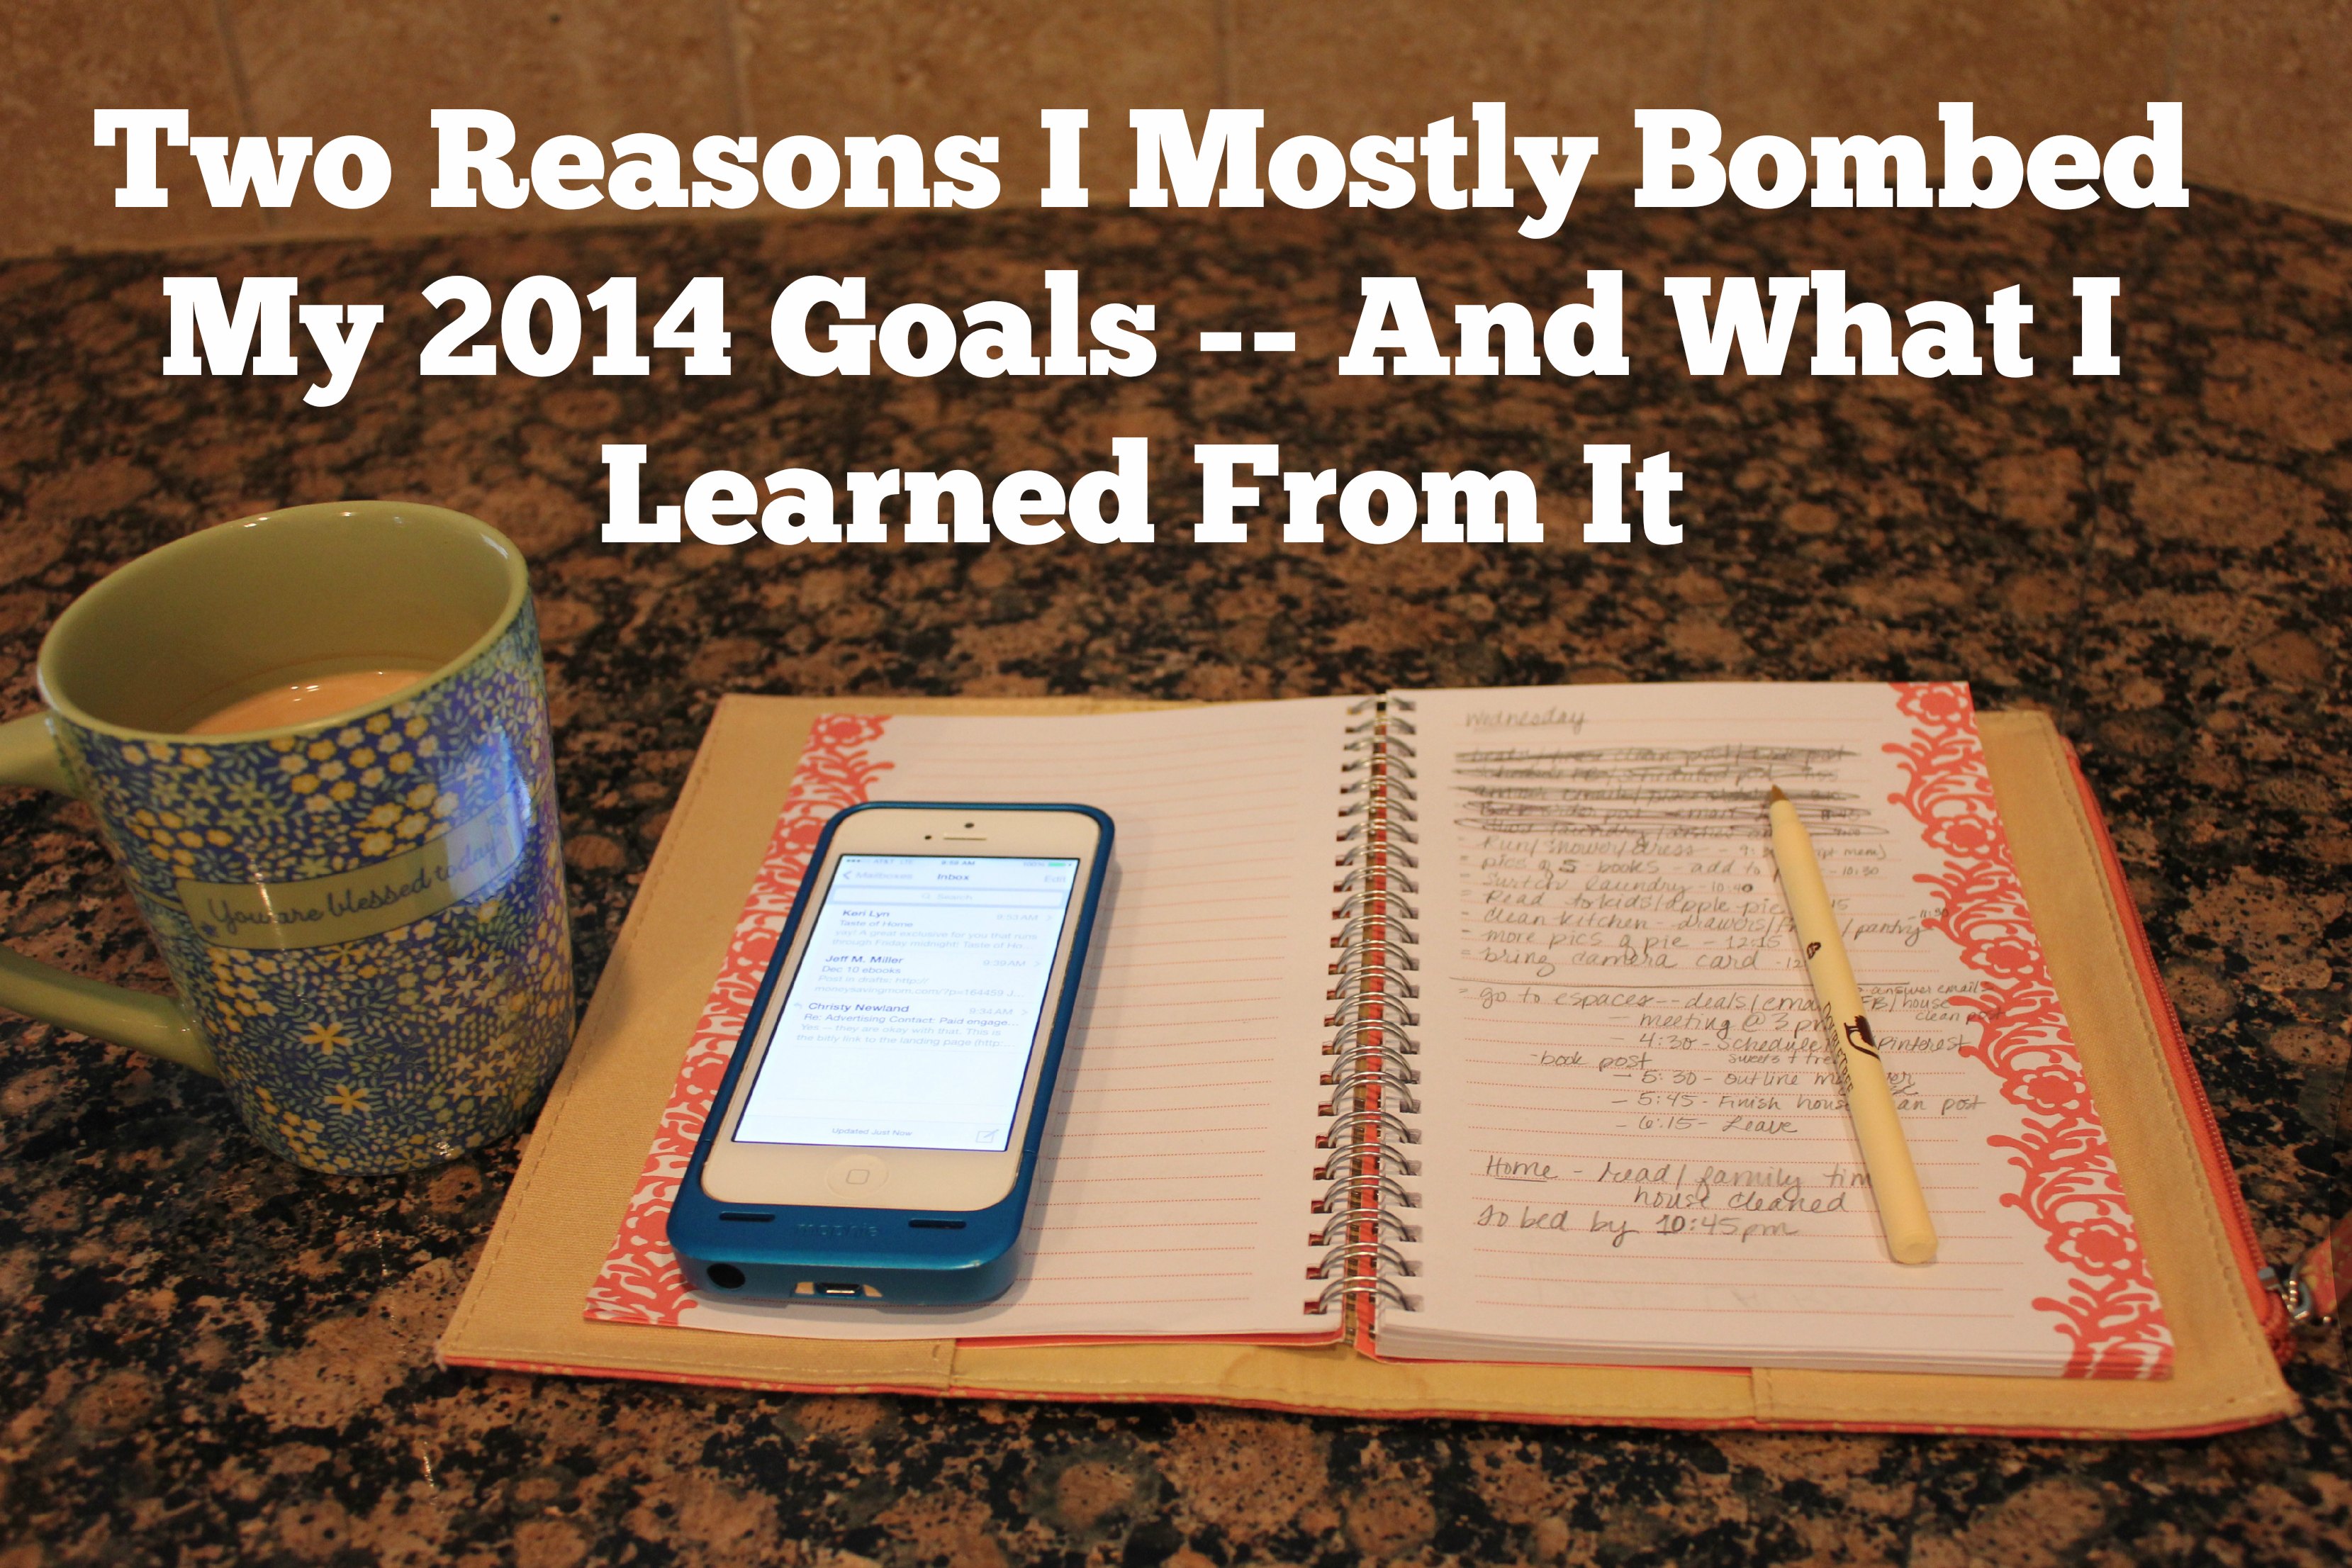 Why I Bombed My 2014 Goals